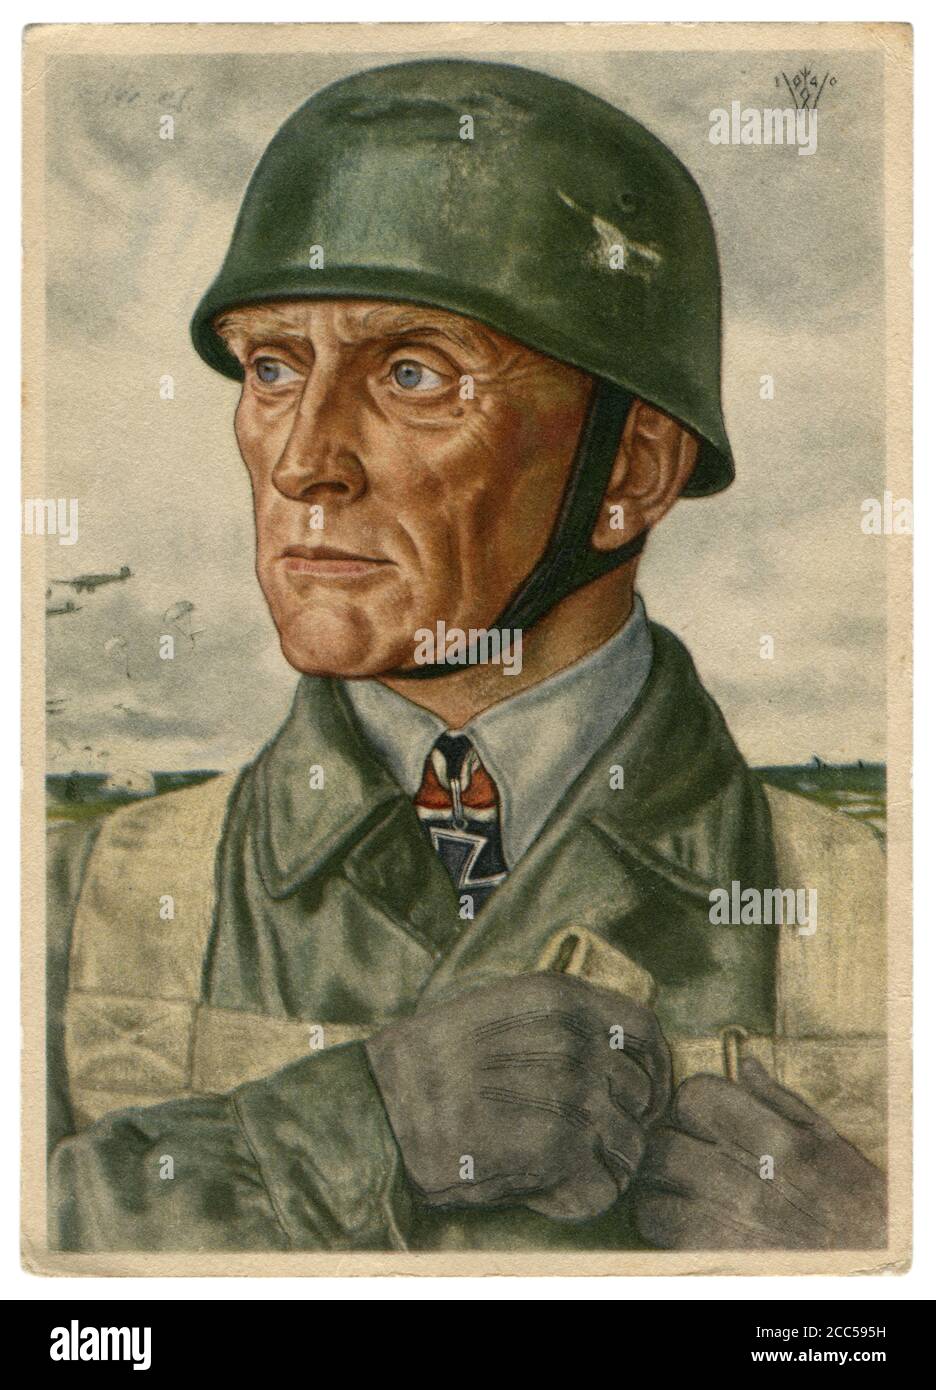 Cartolina storica tedesca: Bruno Bräuer, colonnello dei paracadutisti, insignito della Croce di Cavaliere della Croce di ferro, artista Wolfgang Willrich, 1940 Foto Stock